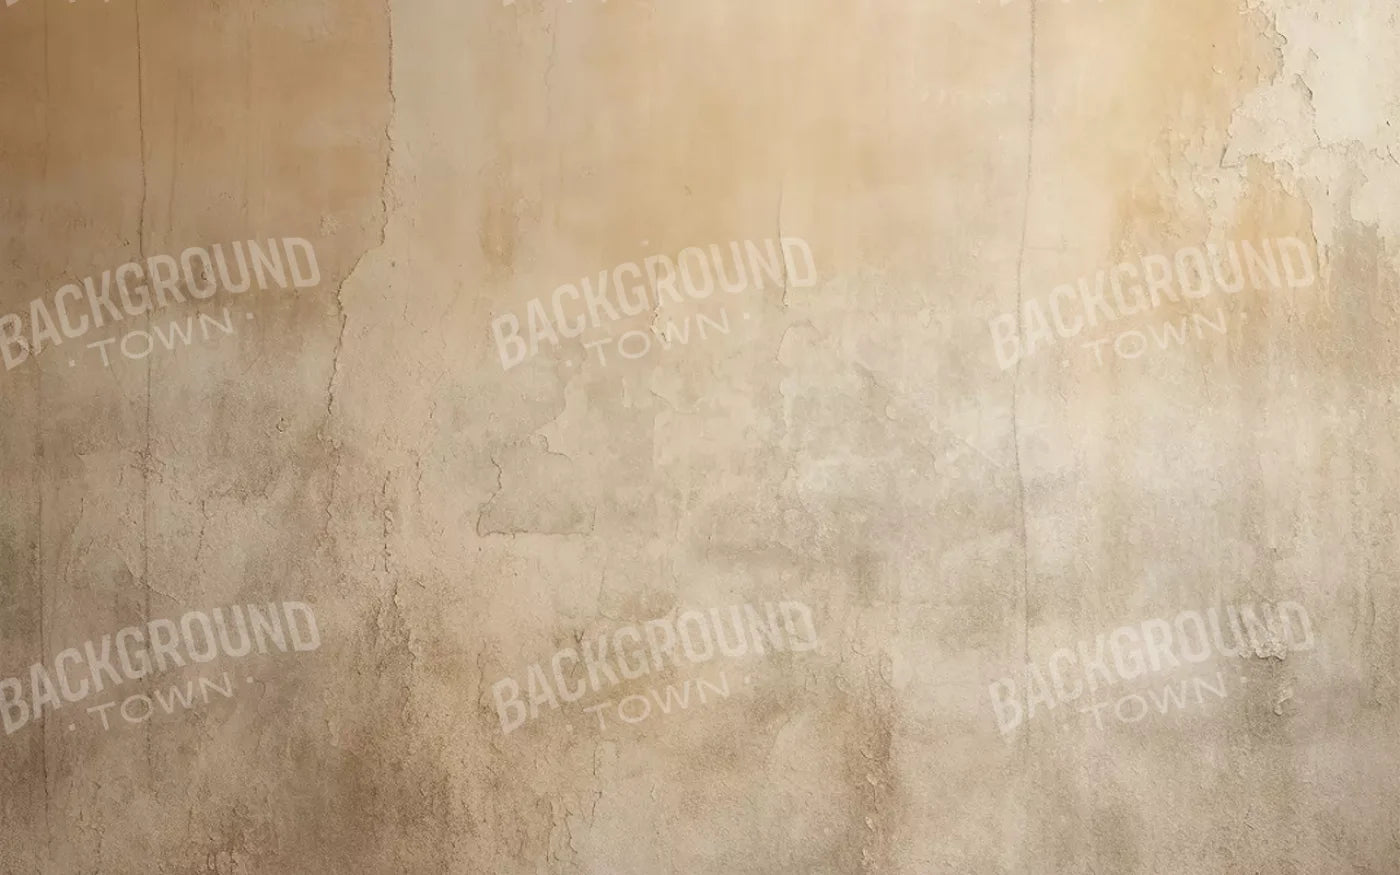 Plaster Wall Cream Iii 16’X10’ Ultracloth (192 X 120 Inch) Backdrop